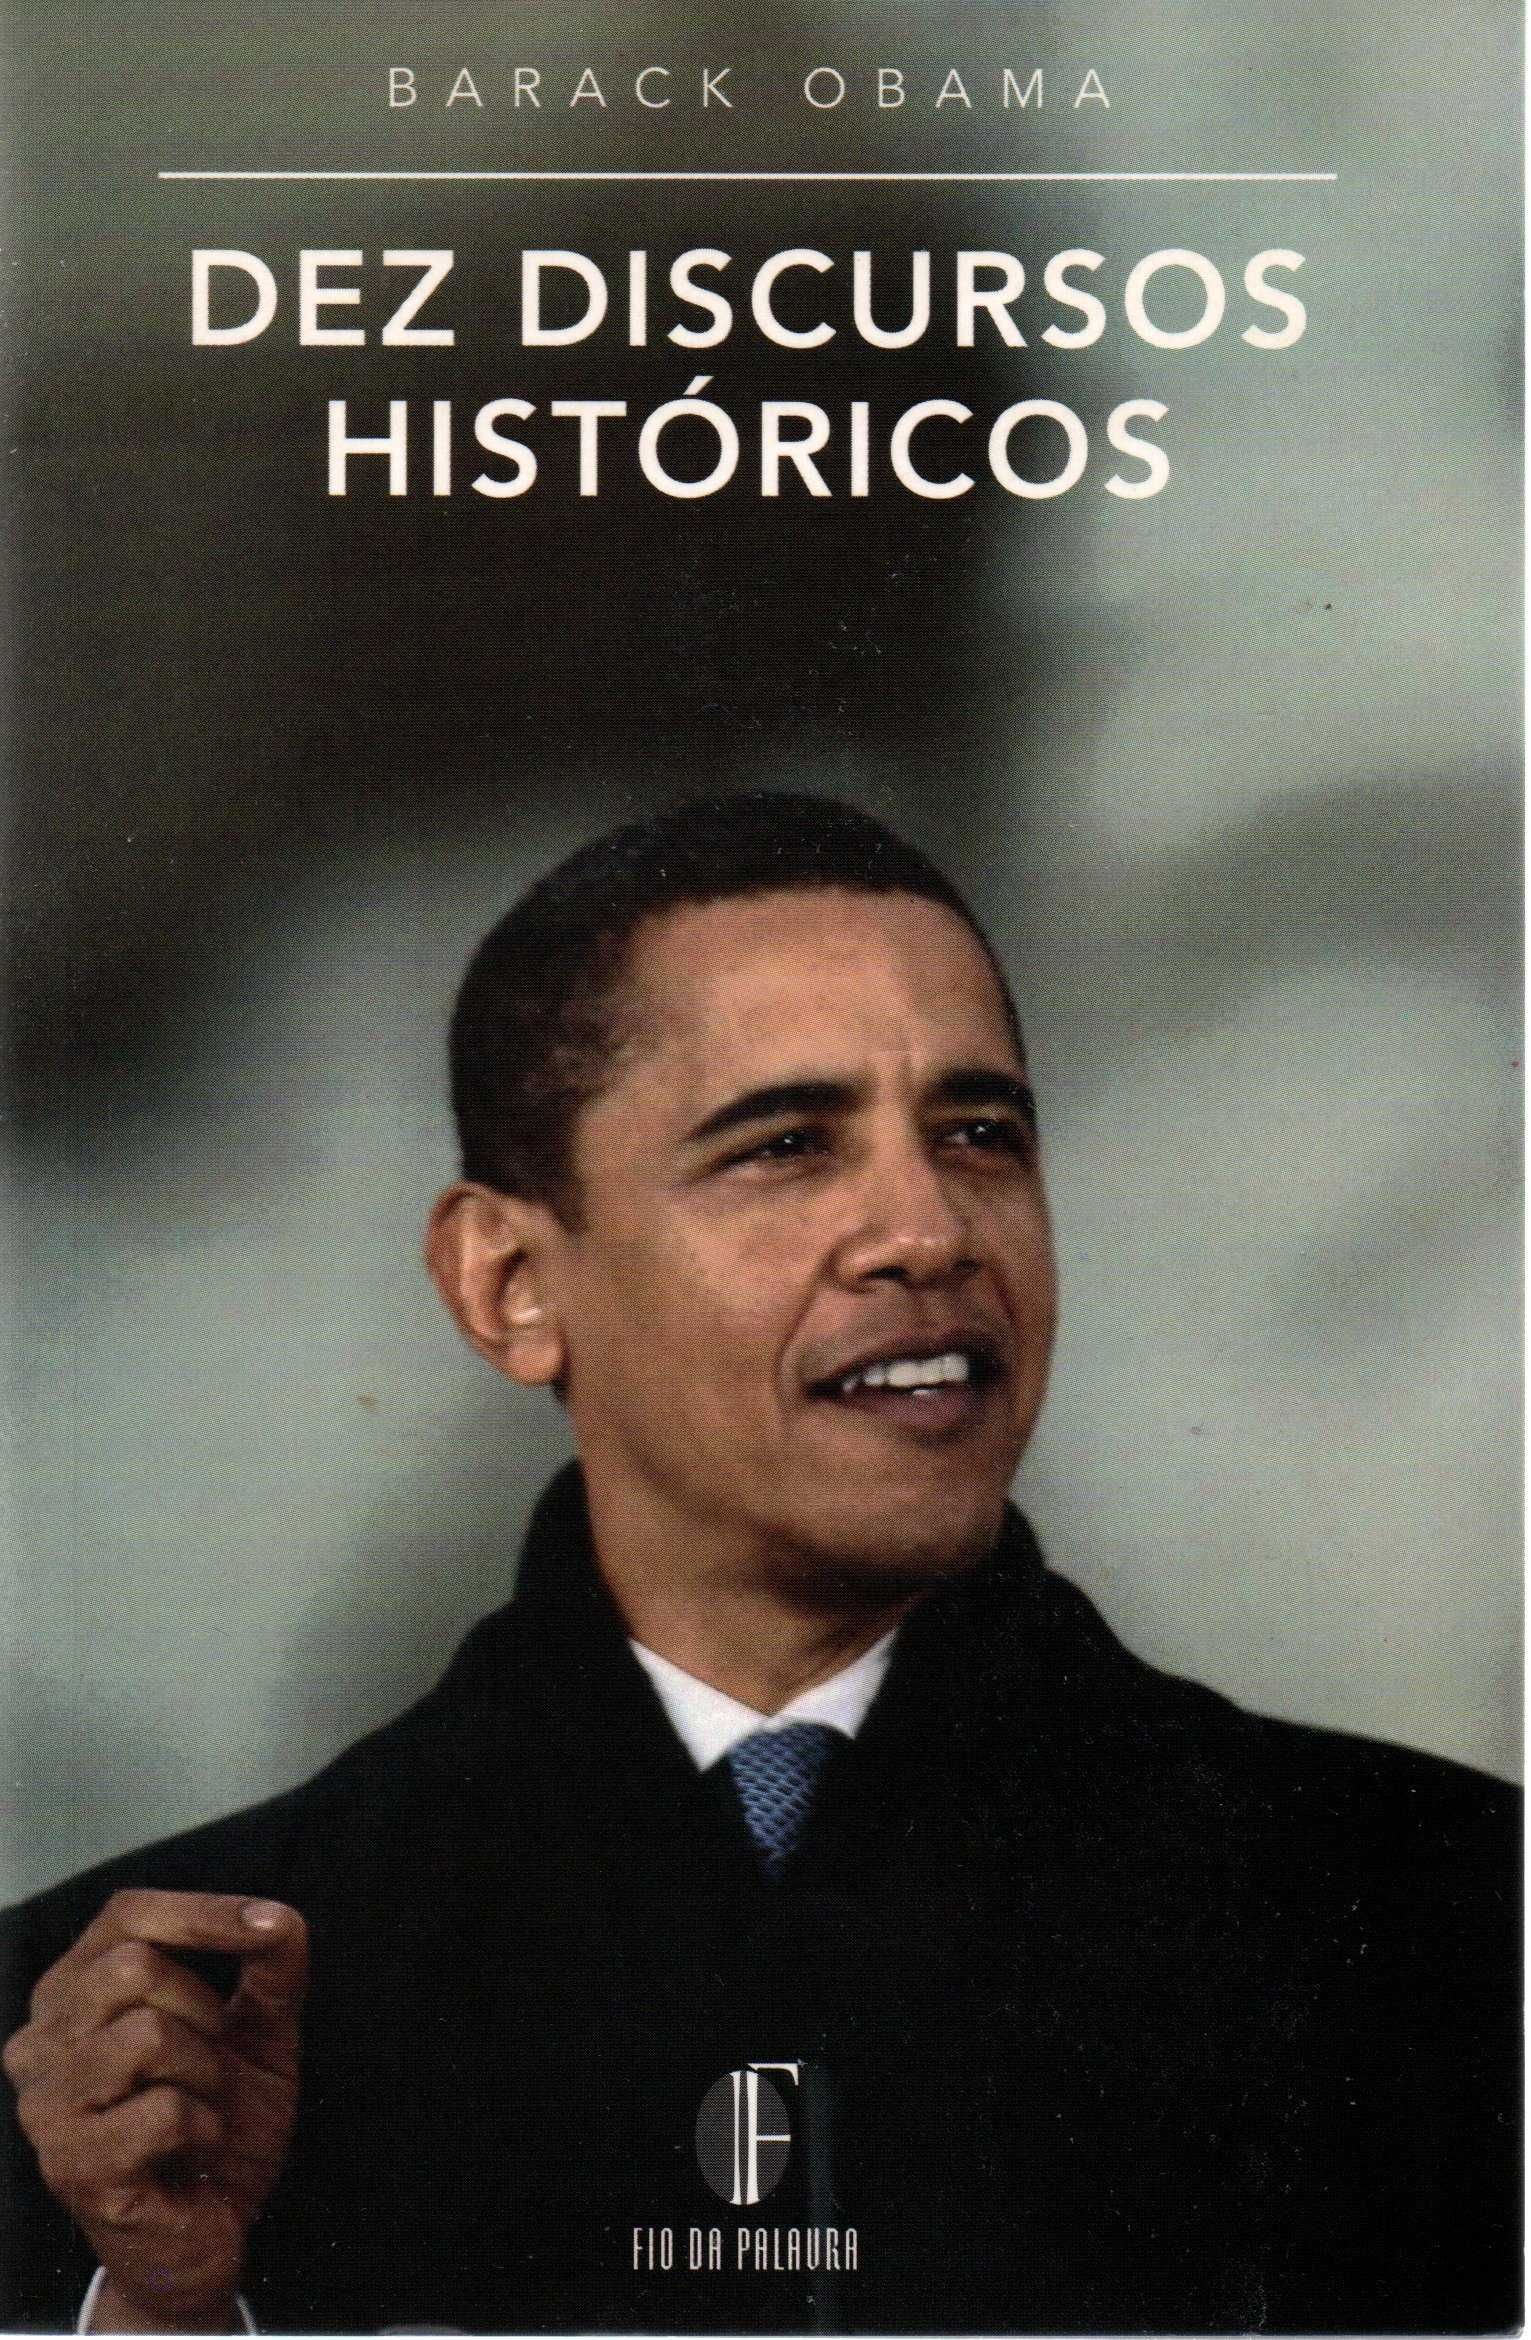 Barack Obama, Dez discursos históricos